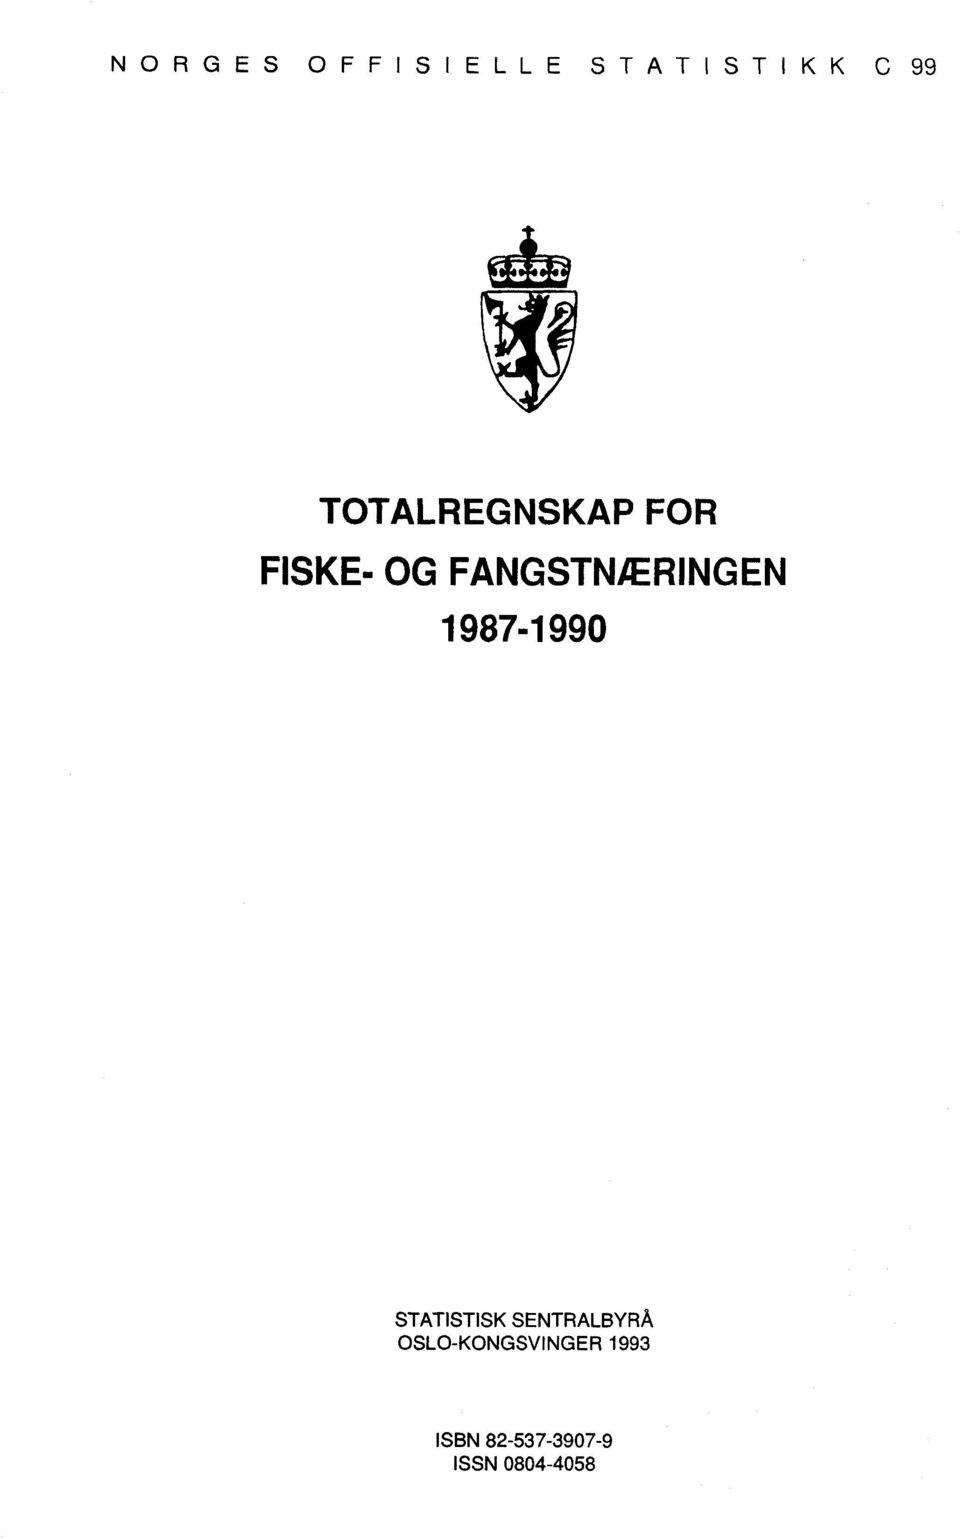 FANGSTNÆRINGEN 1987-1990 STATISTISK